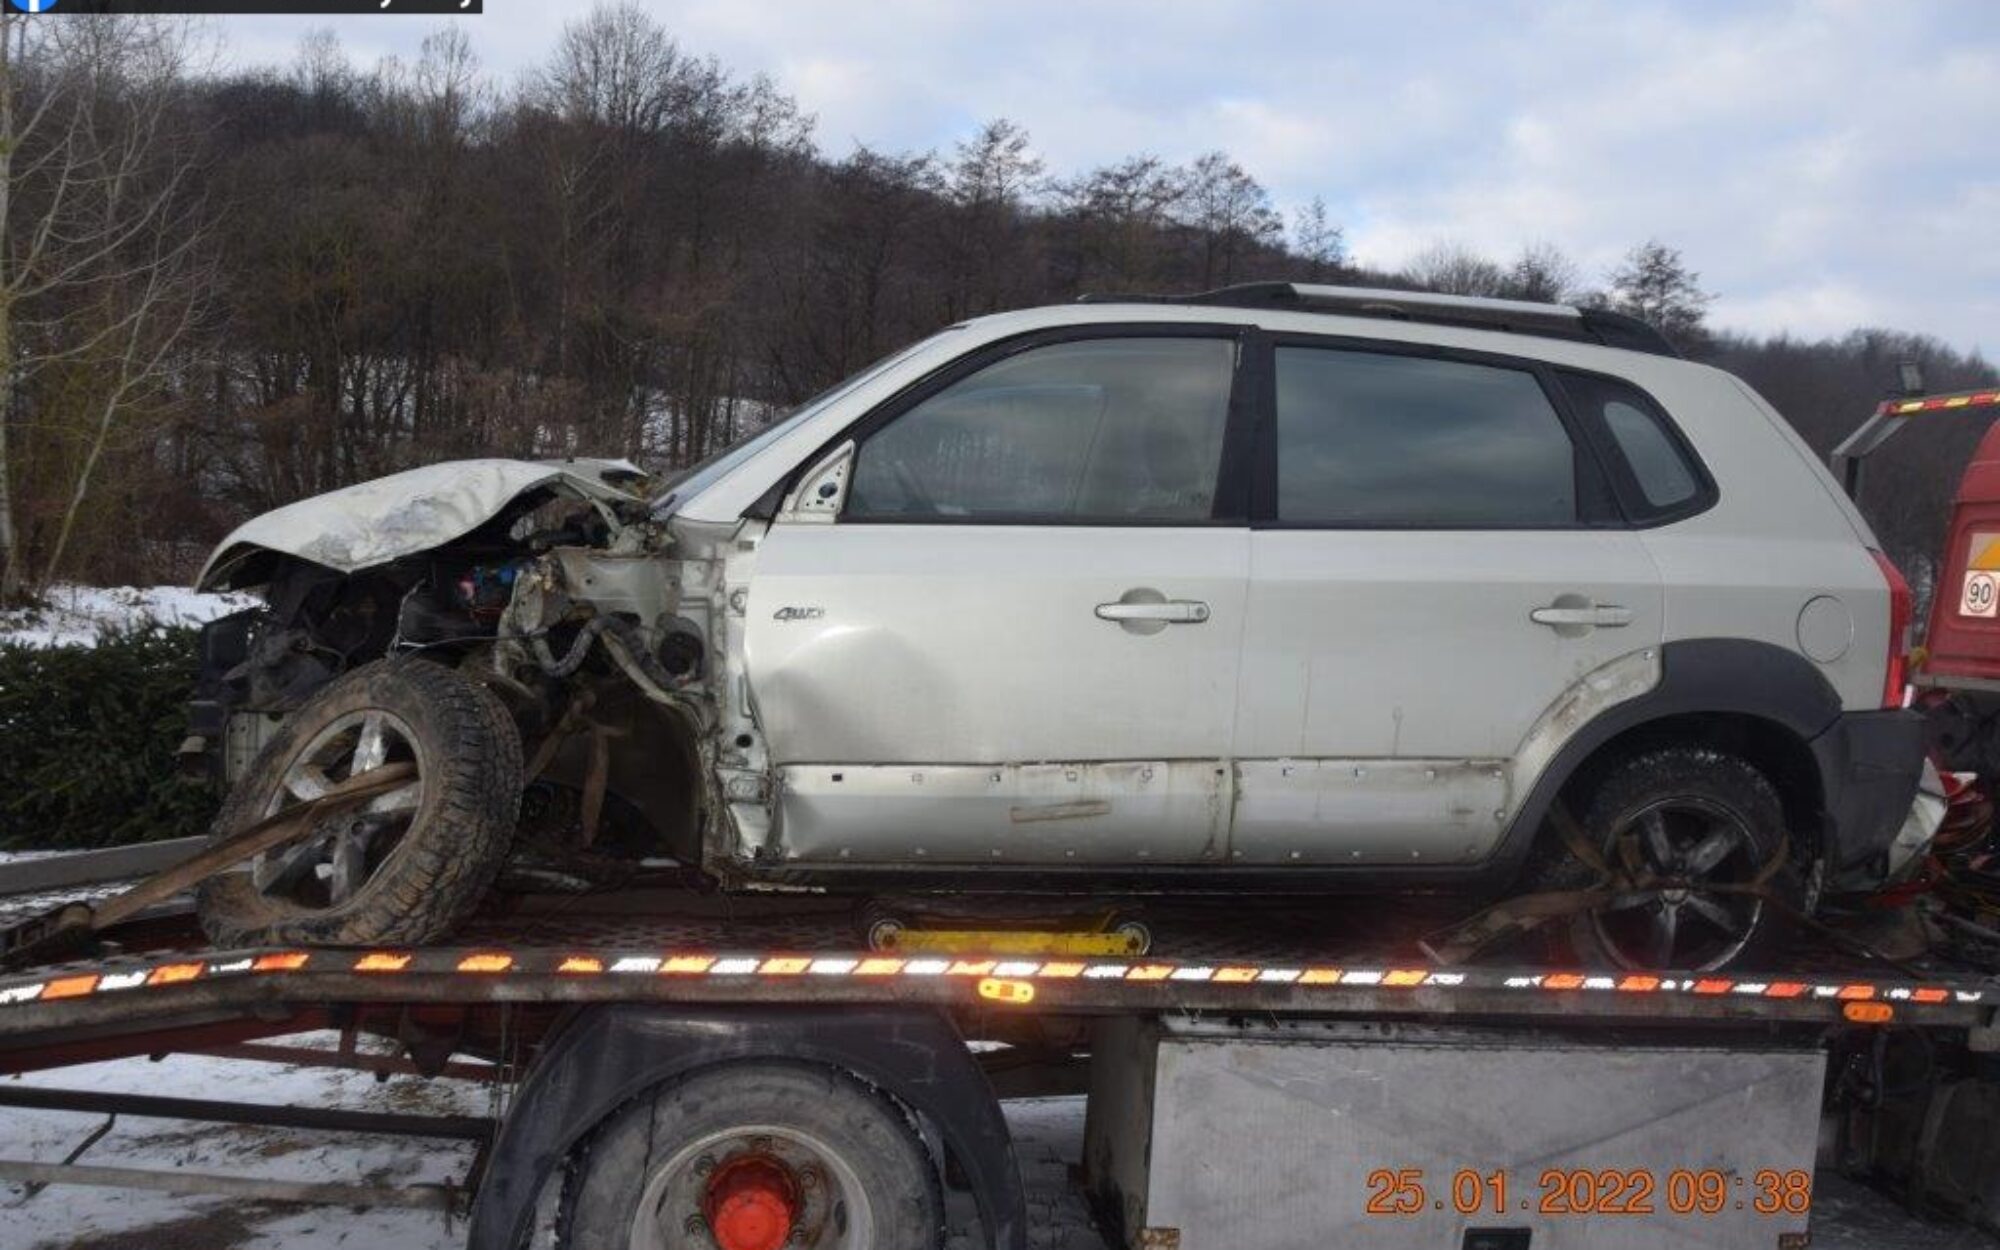 dopravná nehoda, Košice